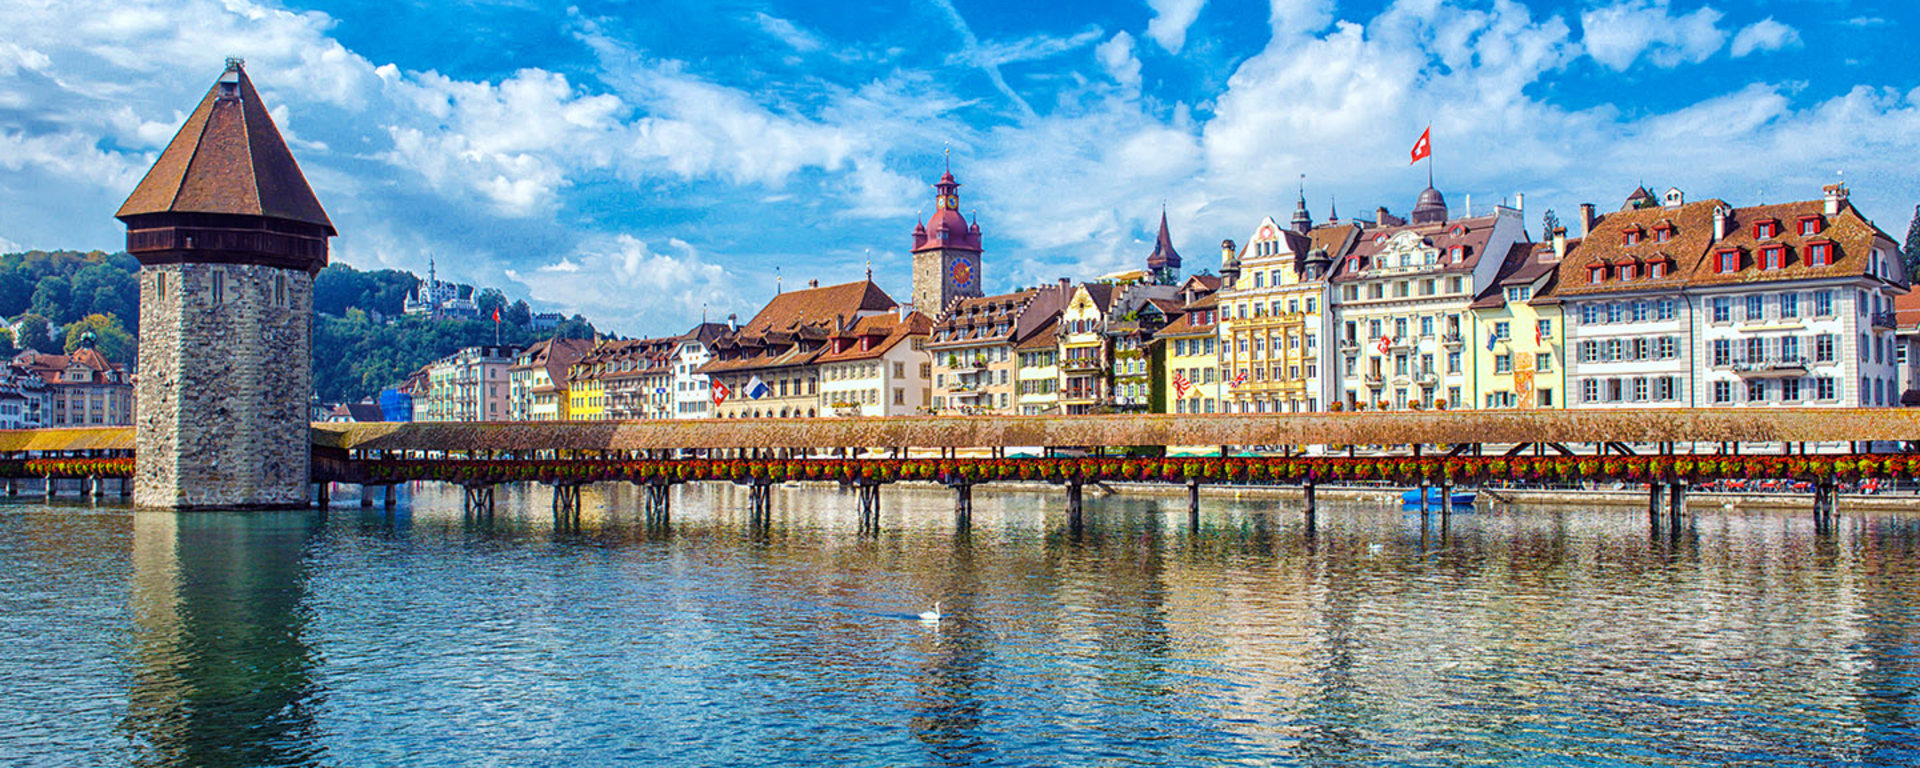 Site de Vontobel à Lucerne : Le paysage urbain avec la rivière qui le traverse, entourée de bâtiments.